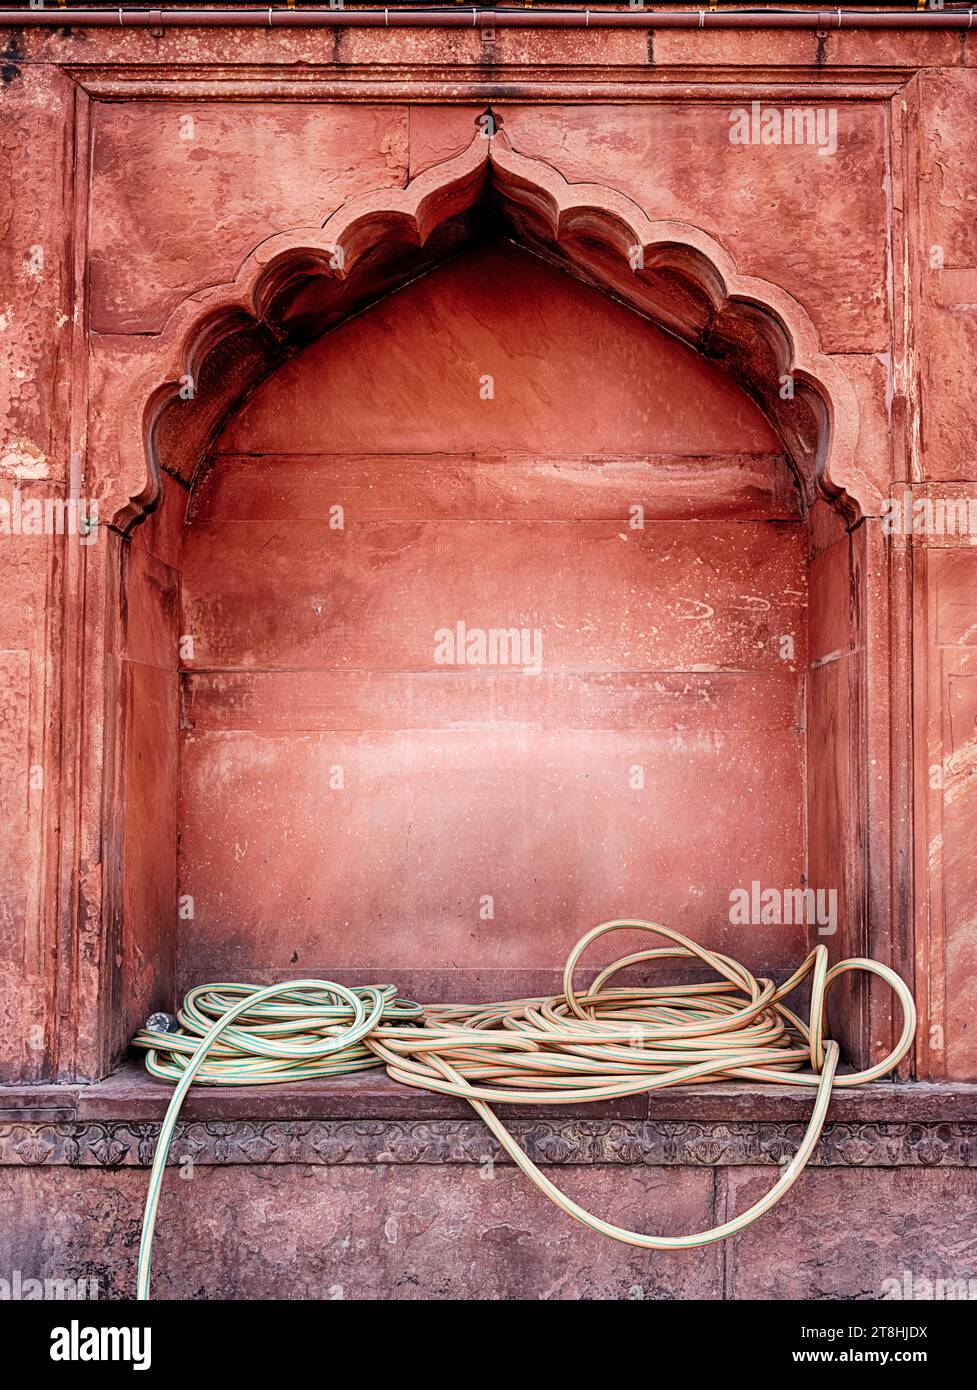 Des tuyaux d'eau jaunes sont enroulés librement dans une niche murale à la mosquée Jama Masjid à Delhi, en Inde. Banque D'Images